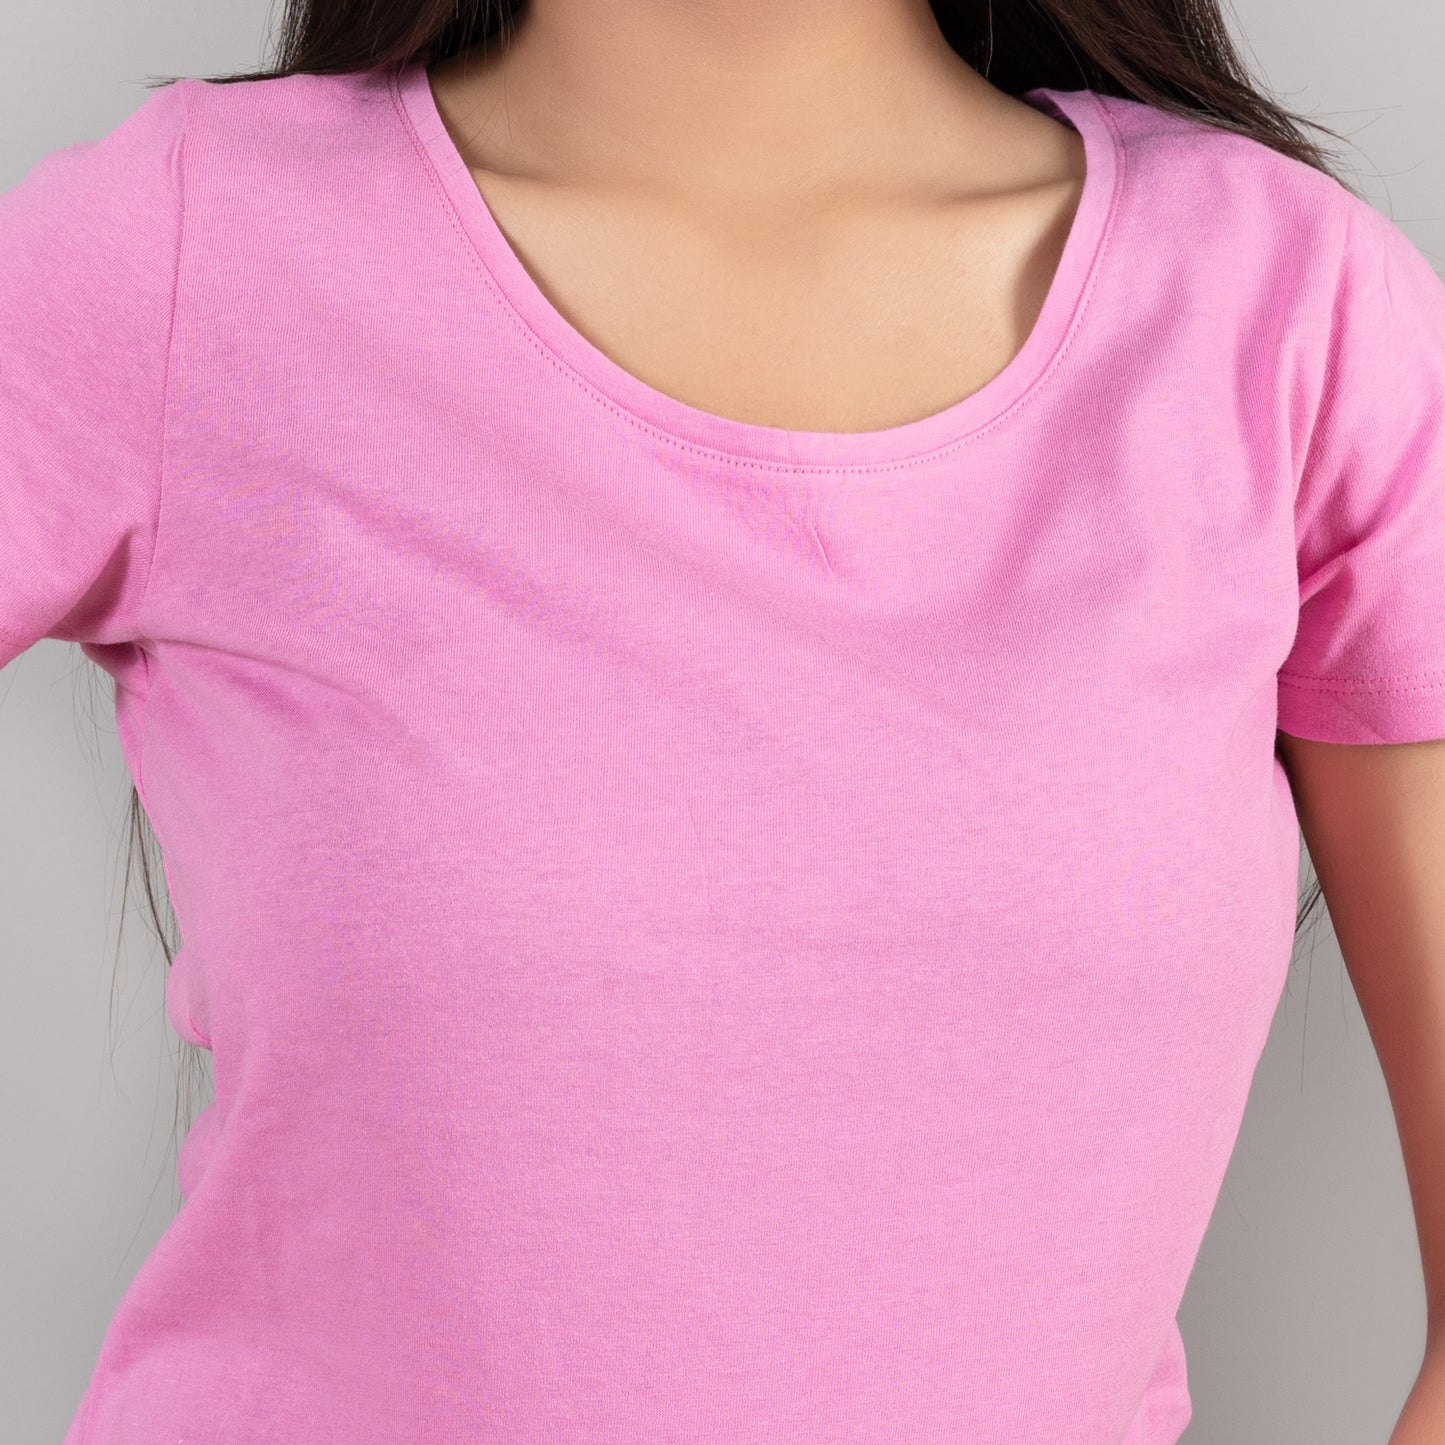 Womens Cotton T-Shirt (Light Pink)